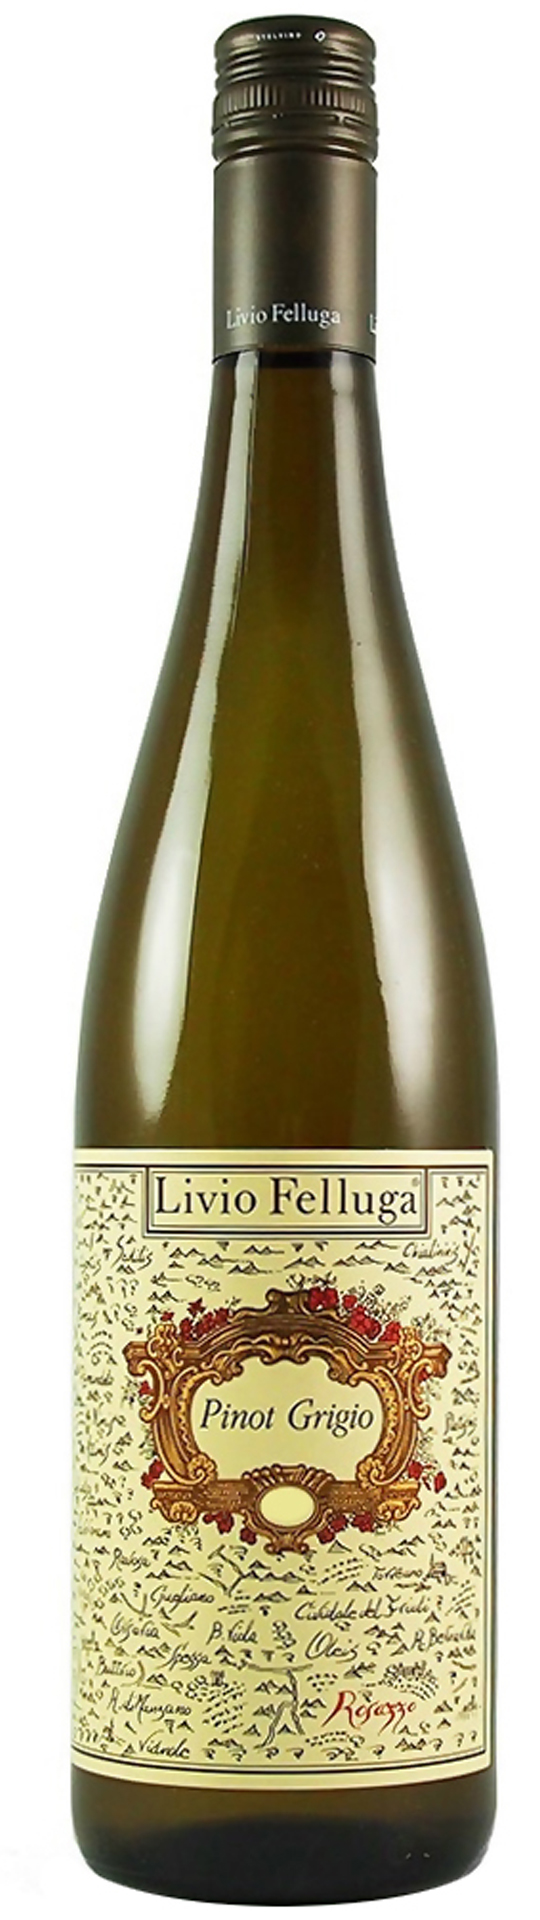 2010 Livio Felluga Pinot Grigio Friuli Colli Orientali фото